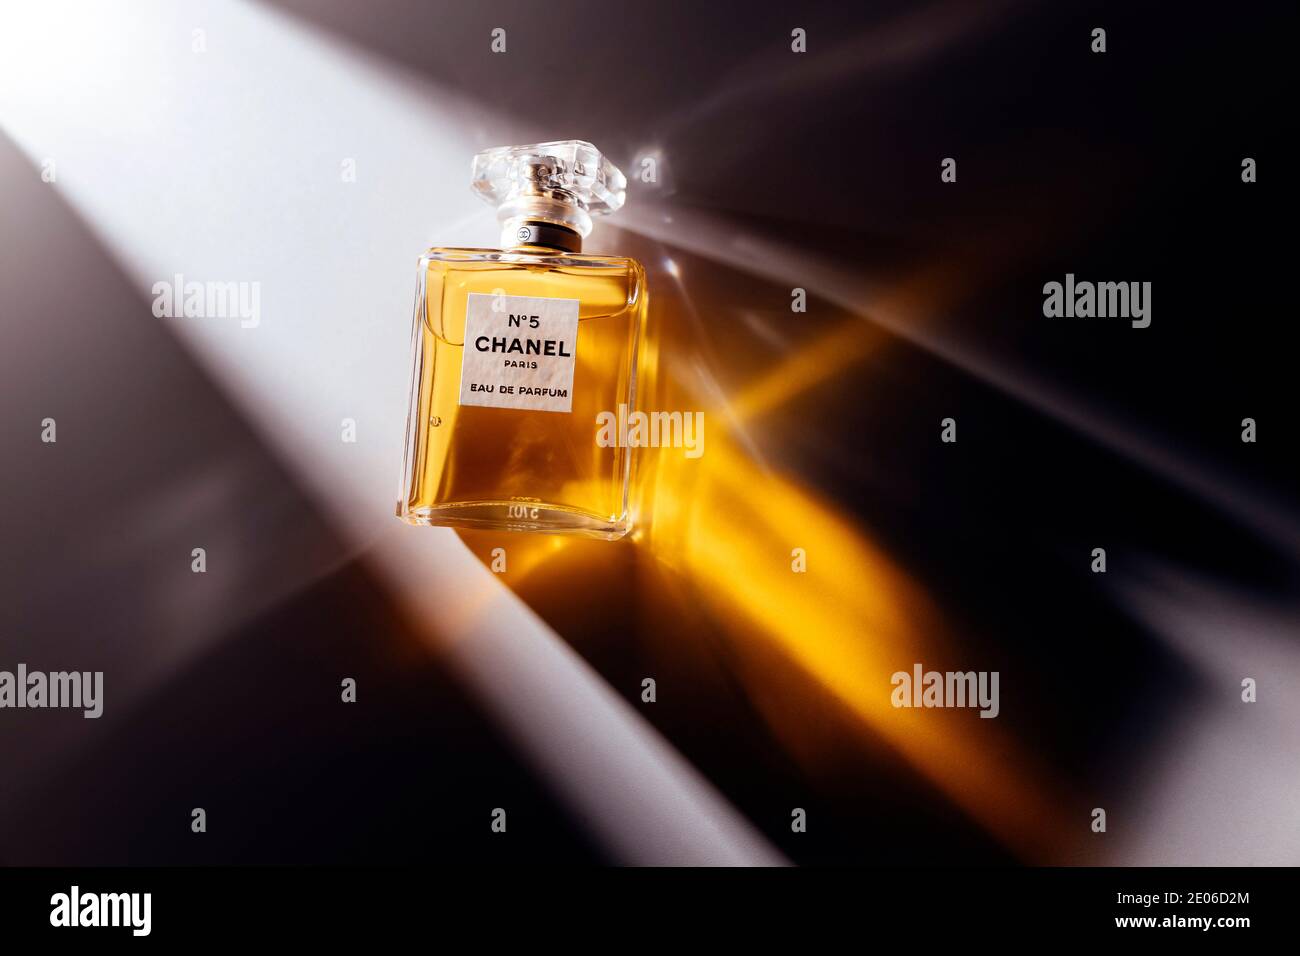 Muestra de perfume Chanel N º 5 de botella de oro de la marca